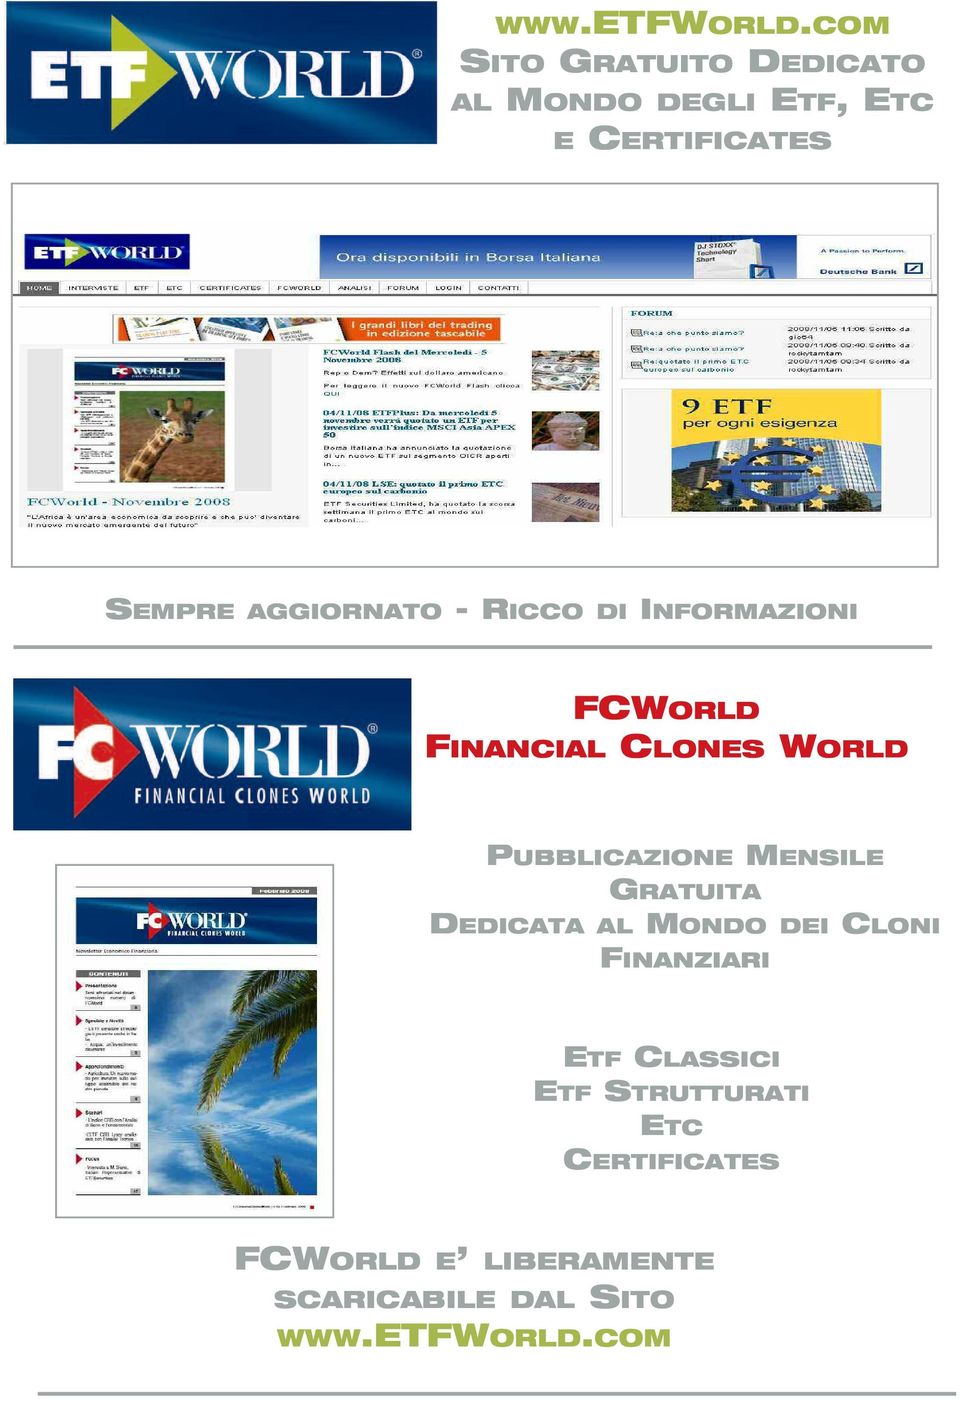 AGGIORNATO -RICCO DI INFORMAZIONI FCWORLD FINANCIAL CLONES WORLD PUBBLICAZIONE